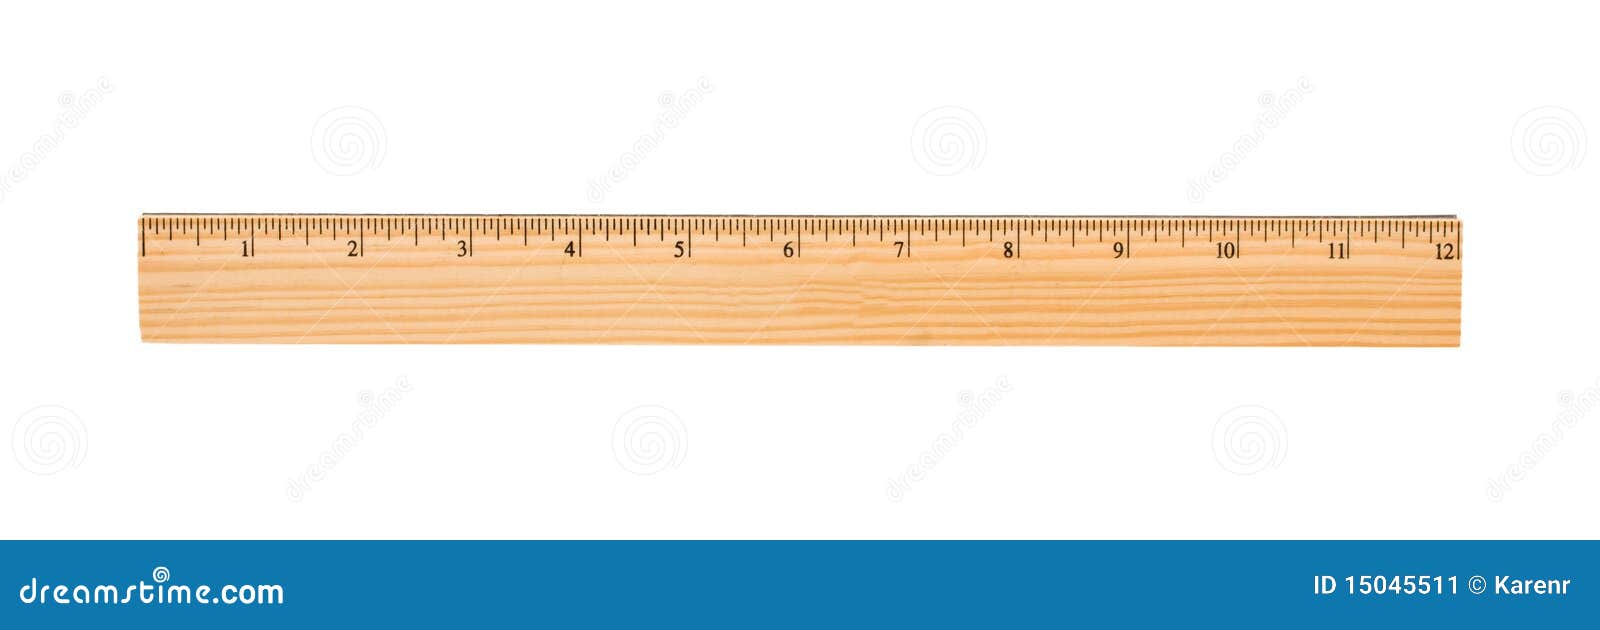 Vector wooden ruler Stock Vector by ©iunewind 120991440